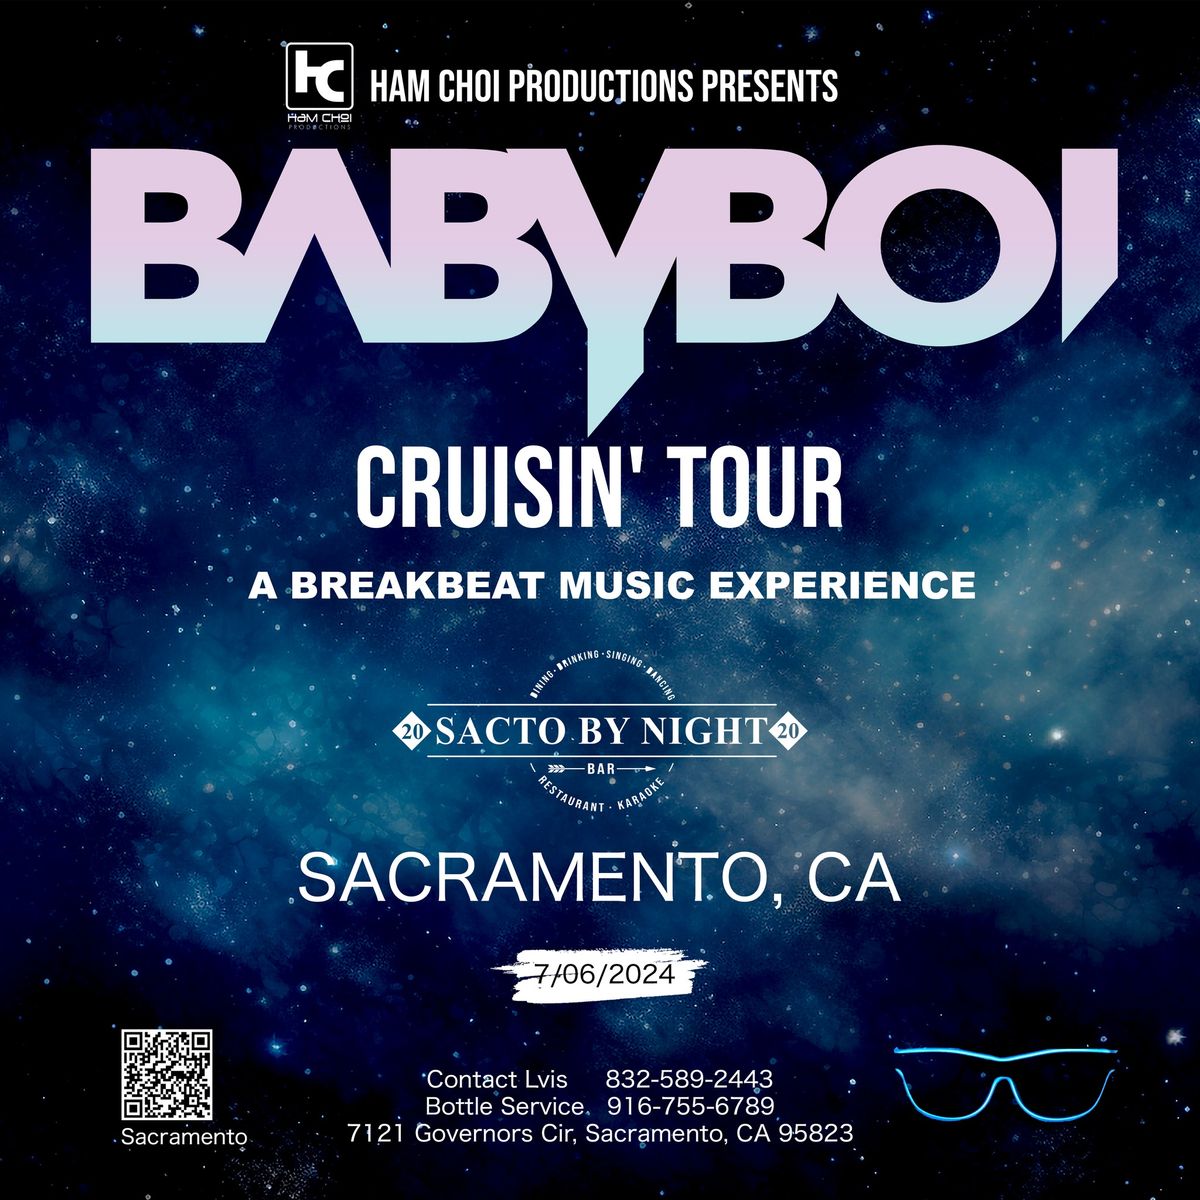 BABYBOI "CRUISIN' TOUR" - SACRAMENTO, CA